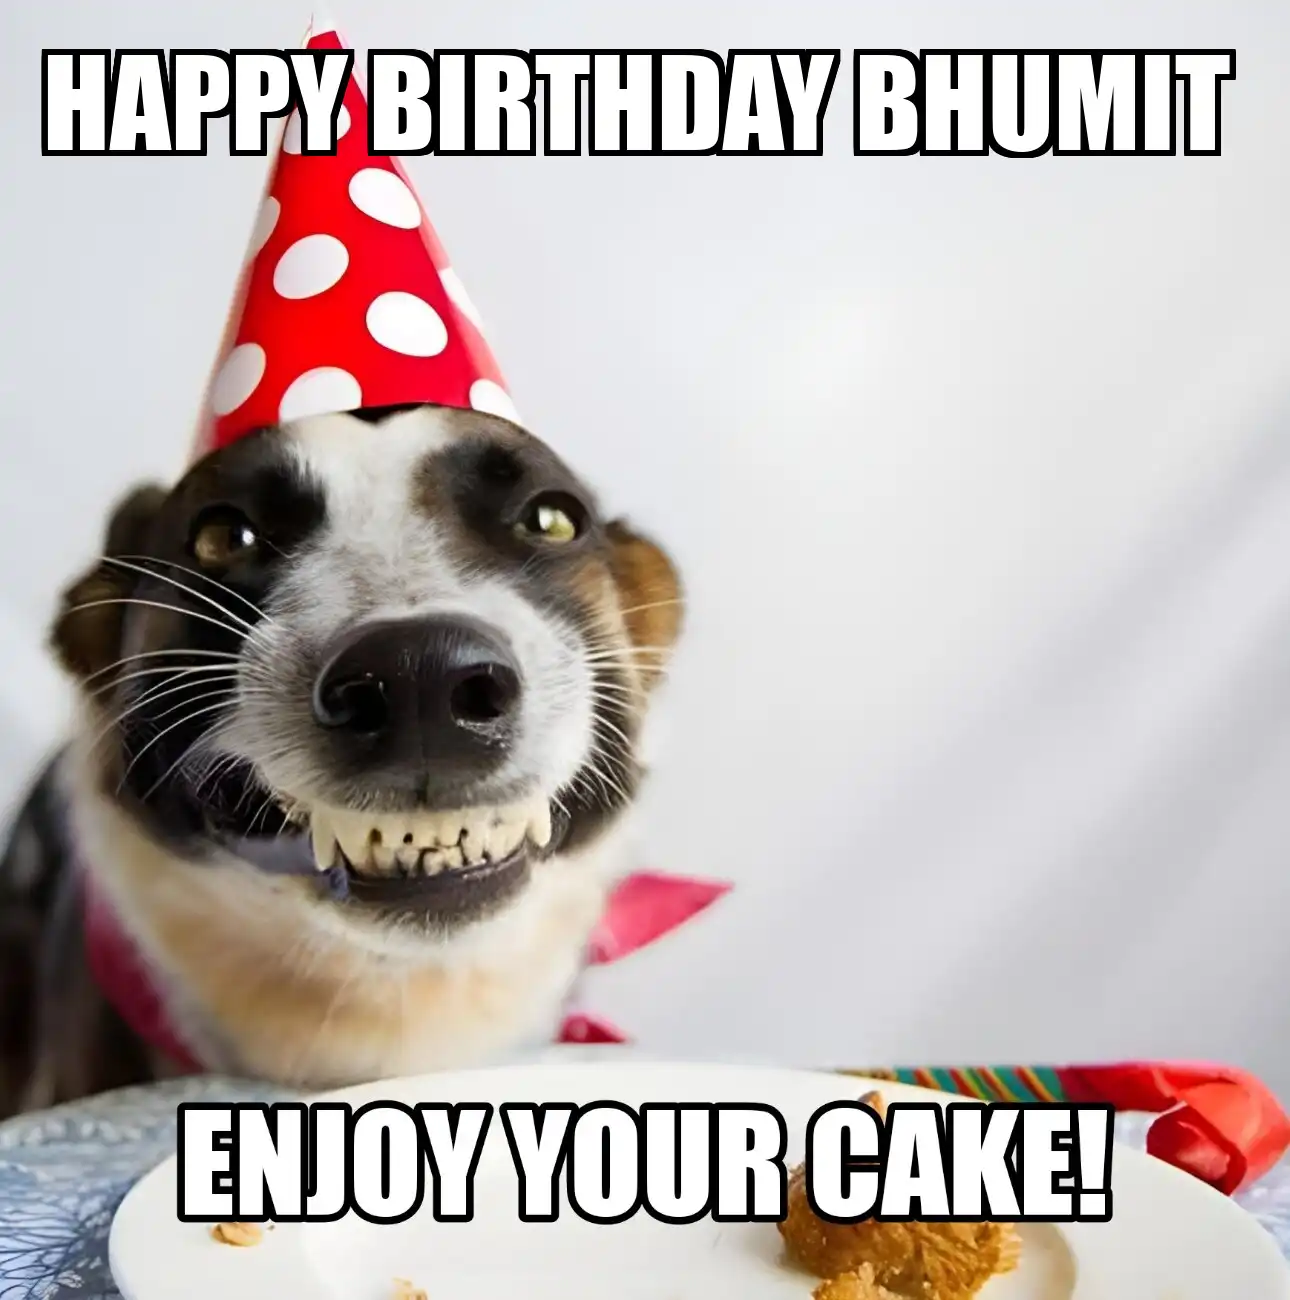 Happy Birthday Bhumit Enjoy Your Cake Dog Meme